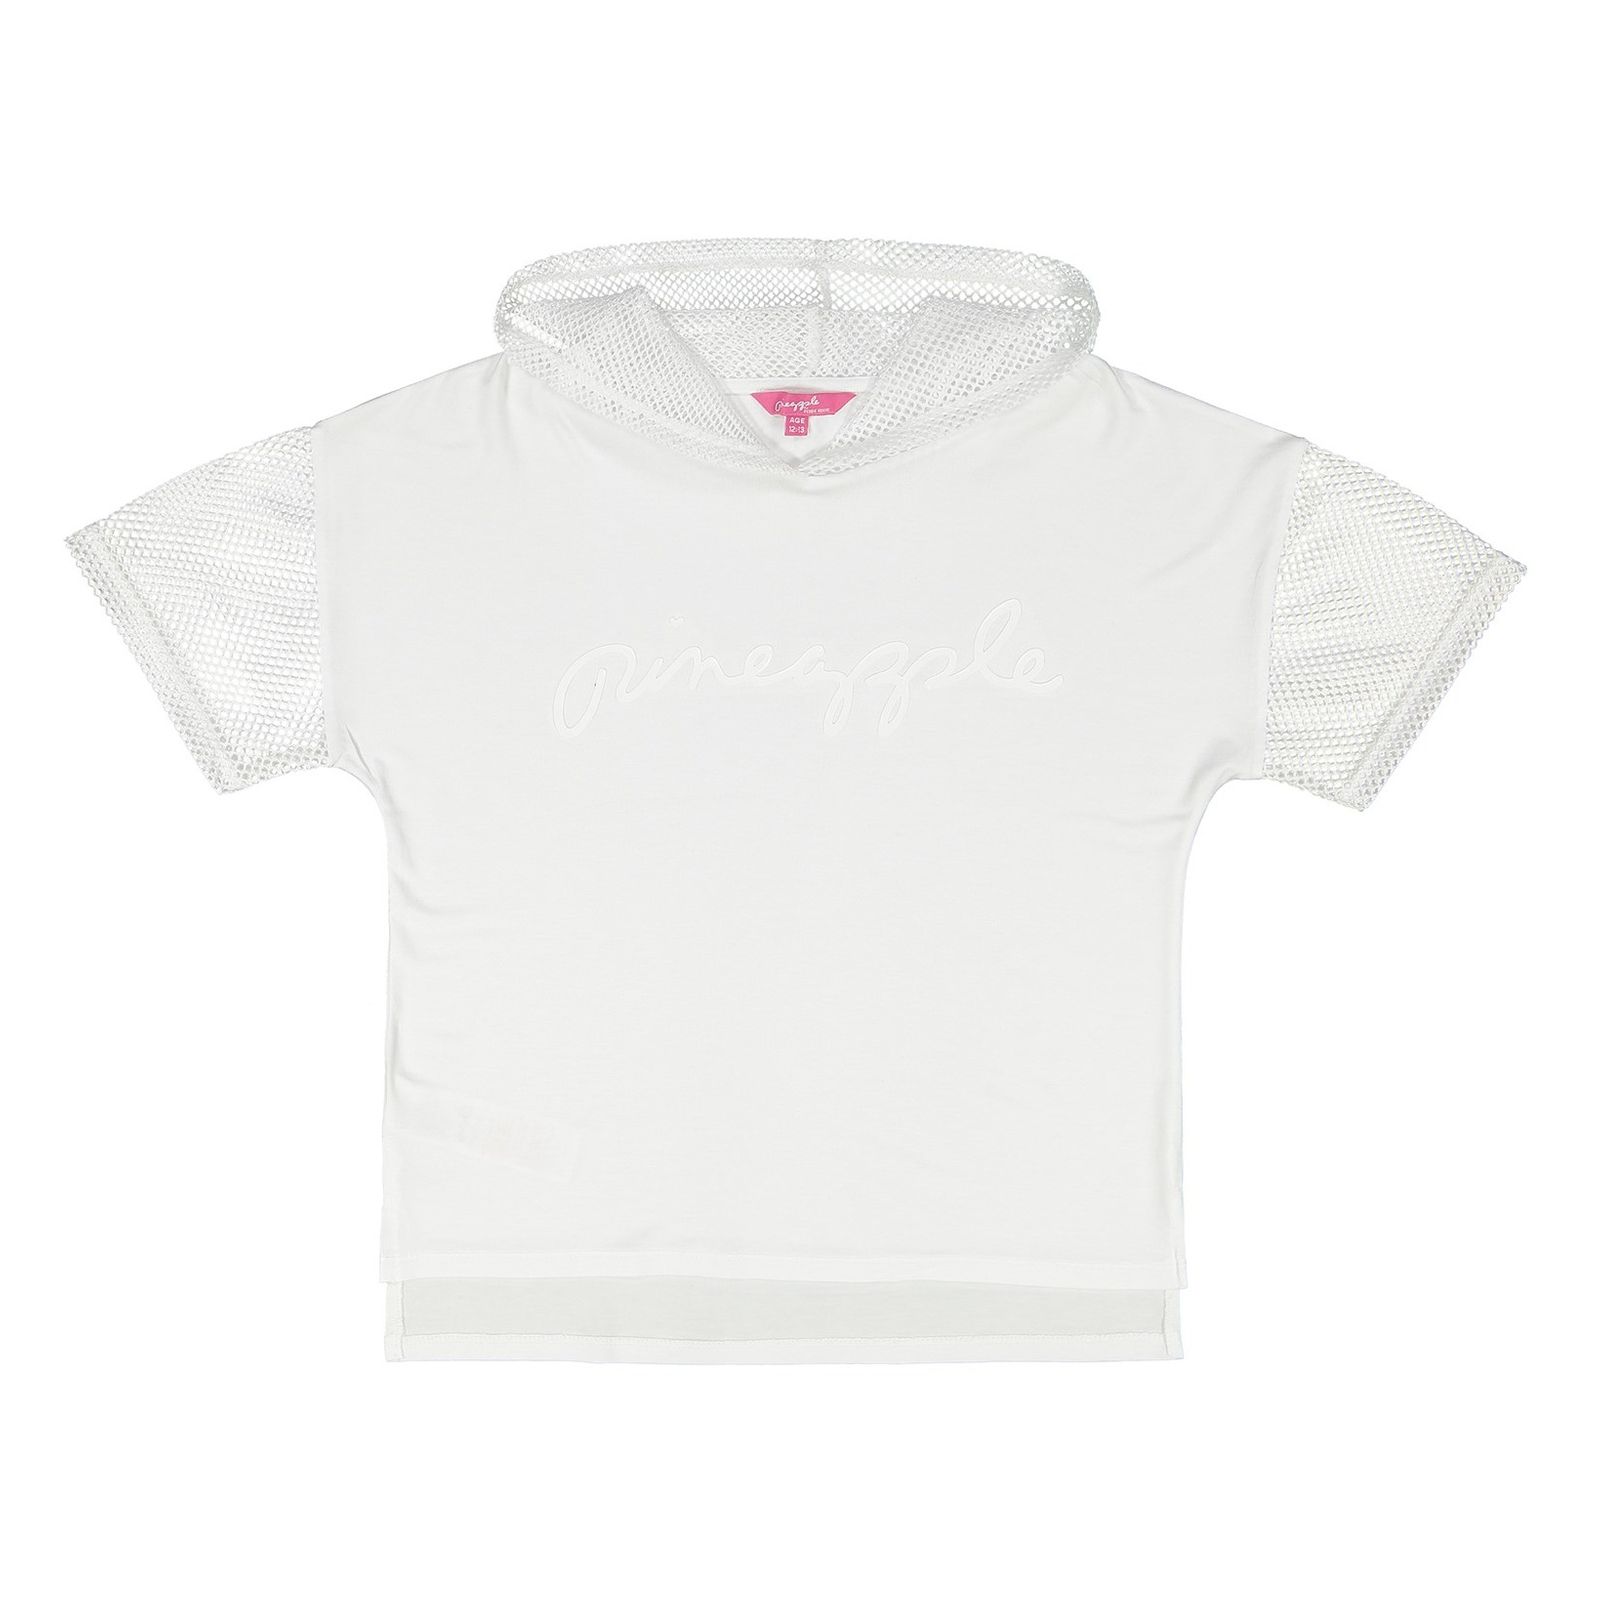 تی شرت ویسکوز یقه گرد دخترانه - دبنهامز - سفيد - 1